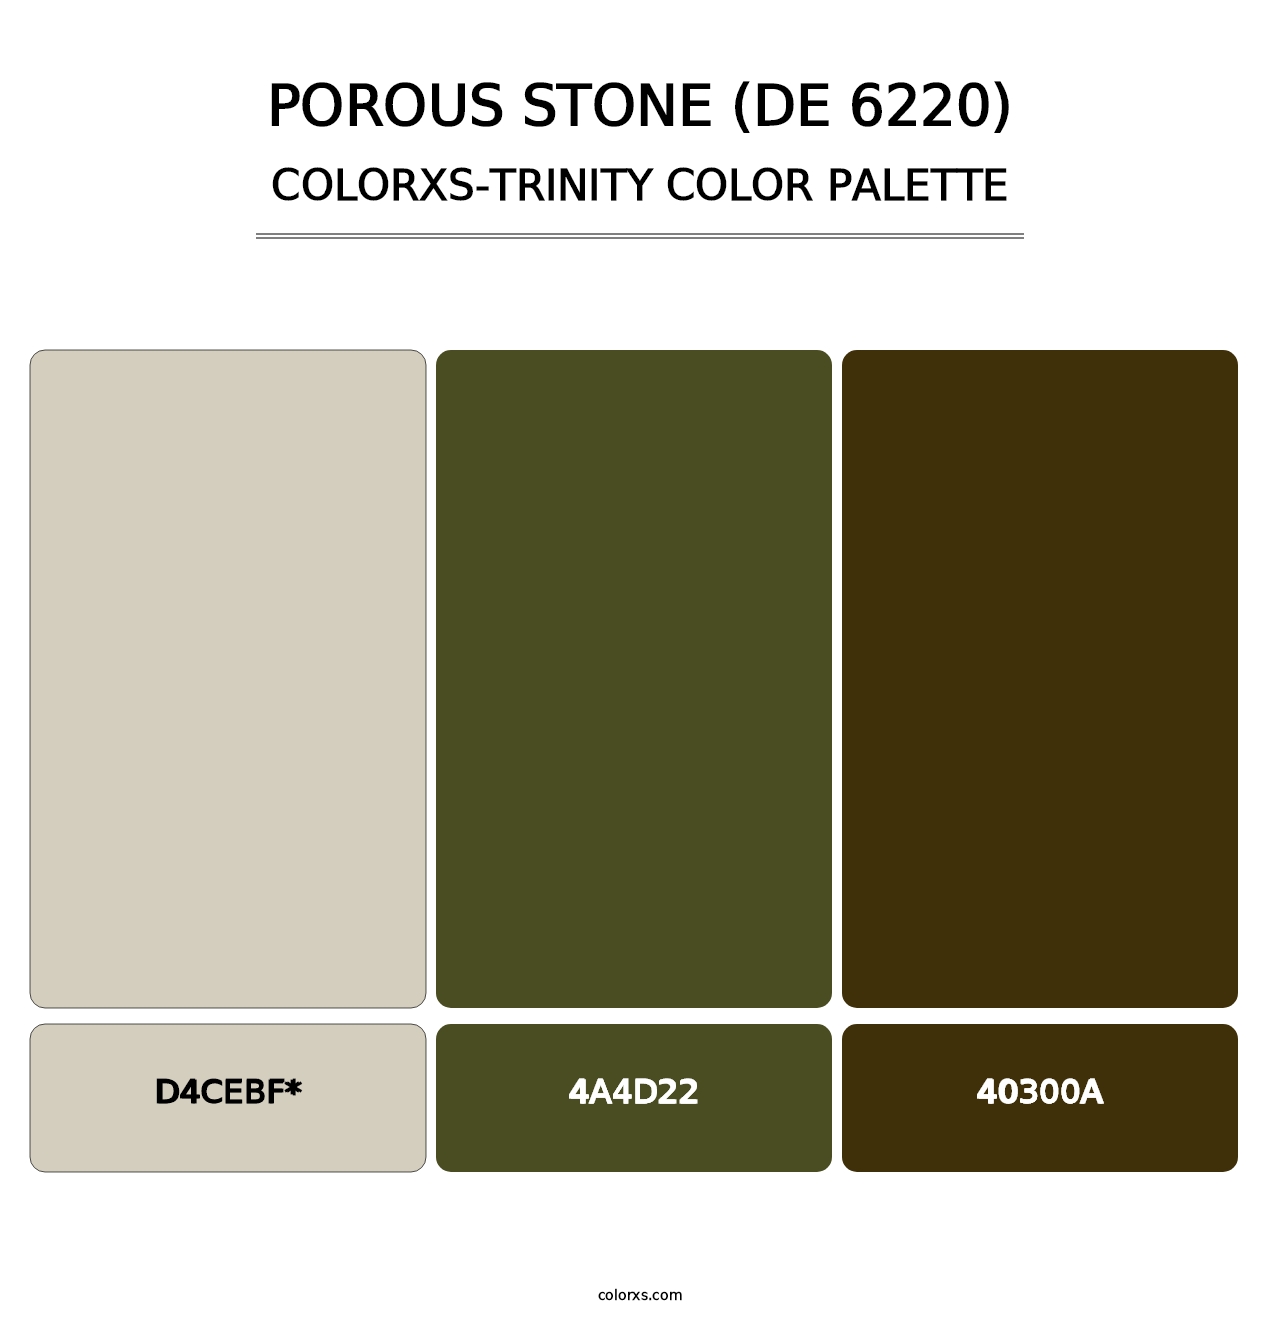 Porous Stone (DE 6220) - Colorxs Trinity Palette